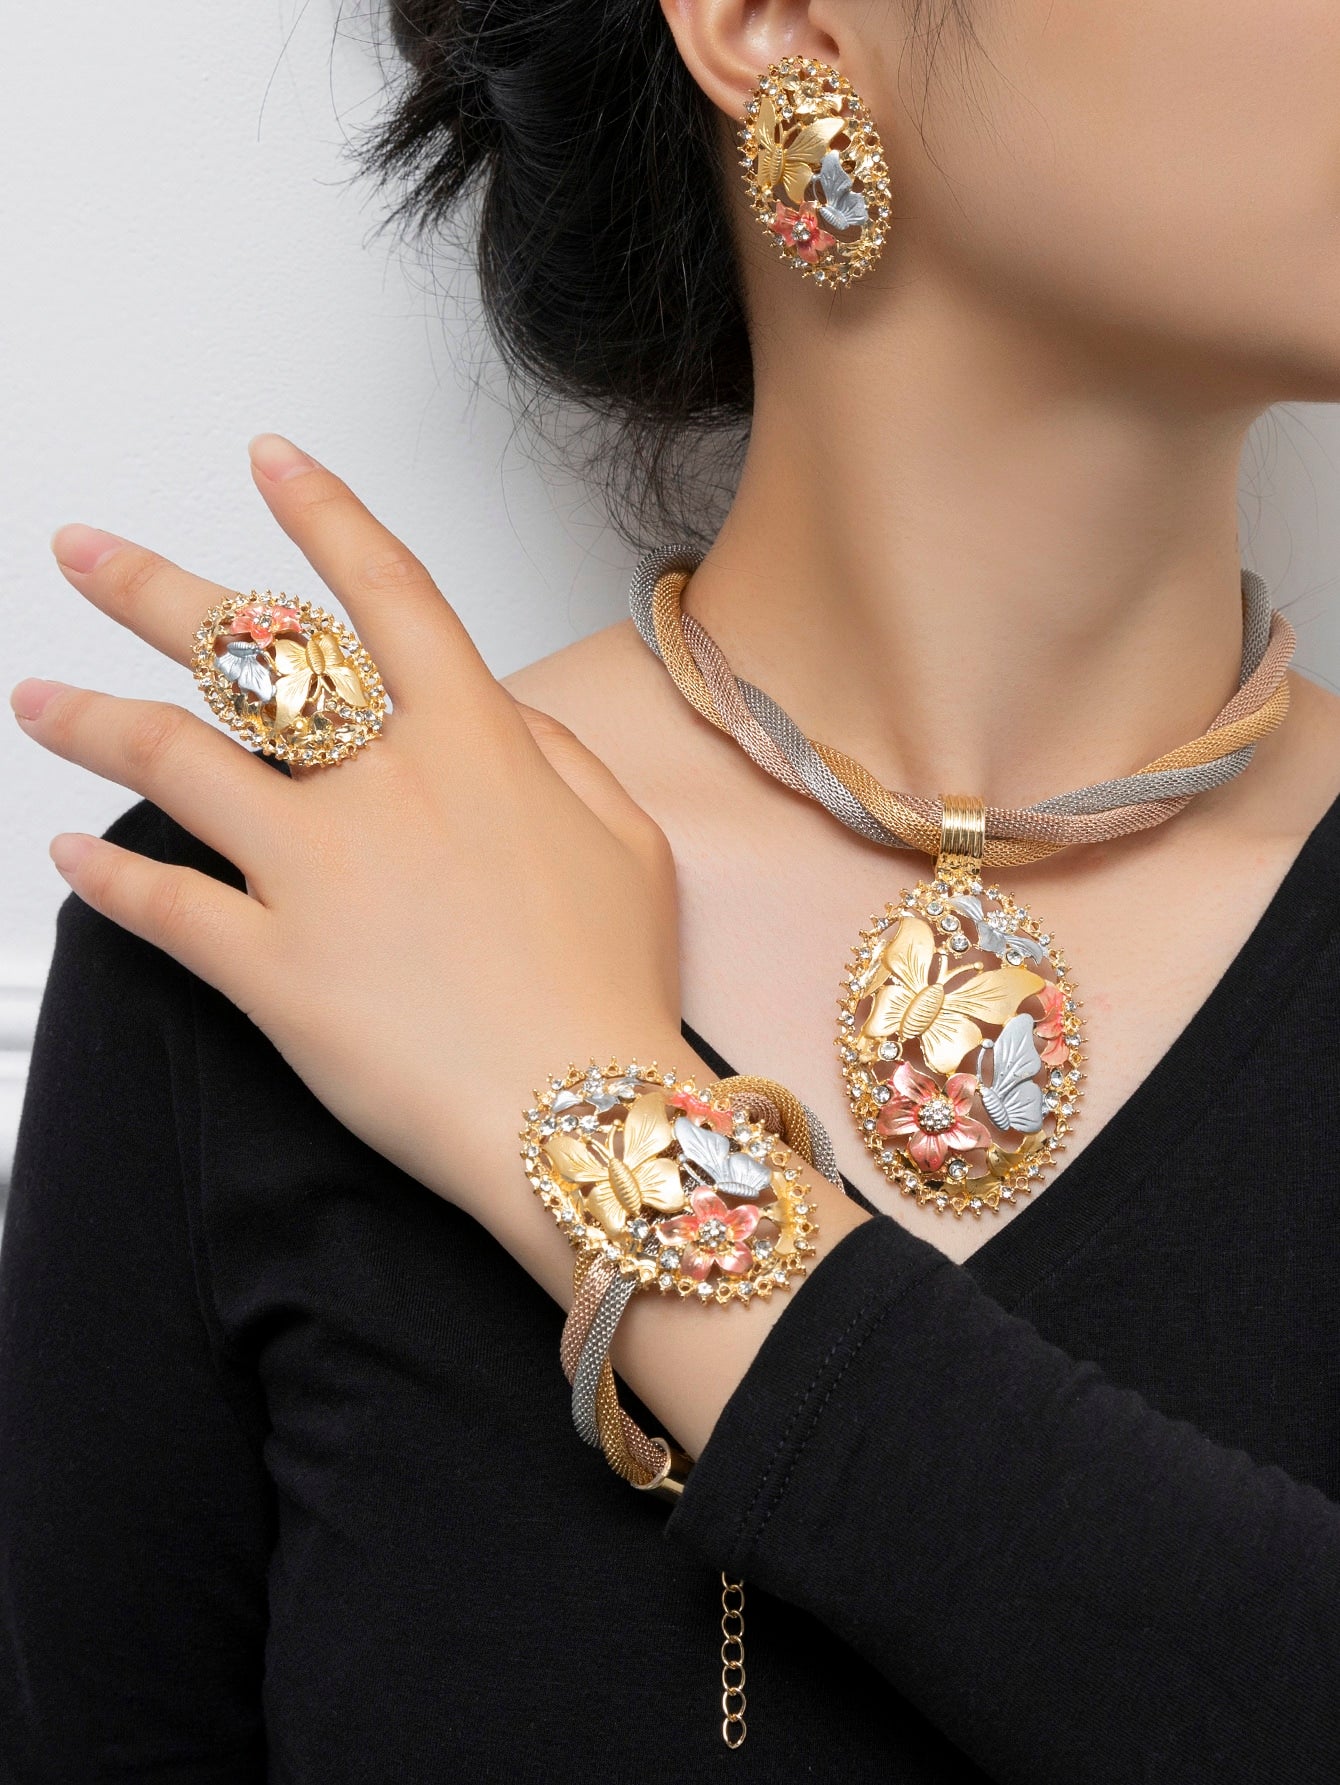 5 قطع أناقة متعدد الألوان شكل فراشة زخرفة للنساء طقم مجوهرات , الموضة اكسسوارات